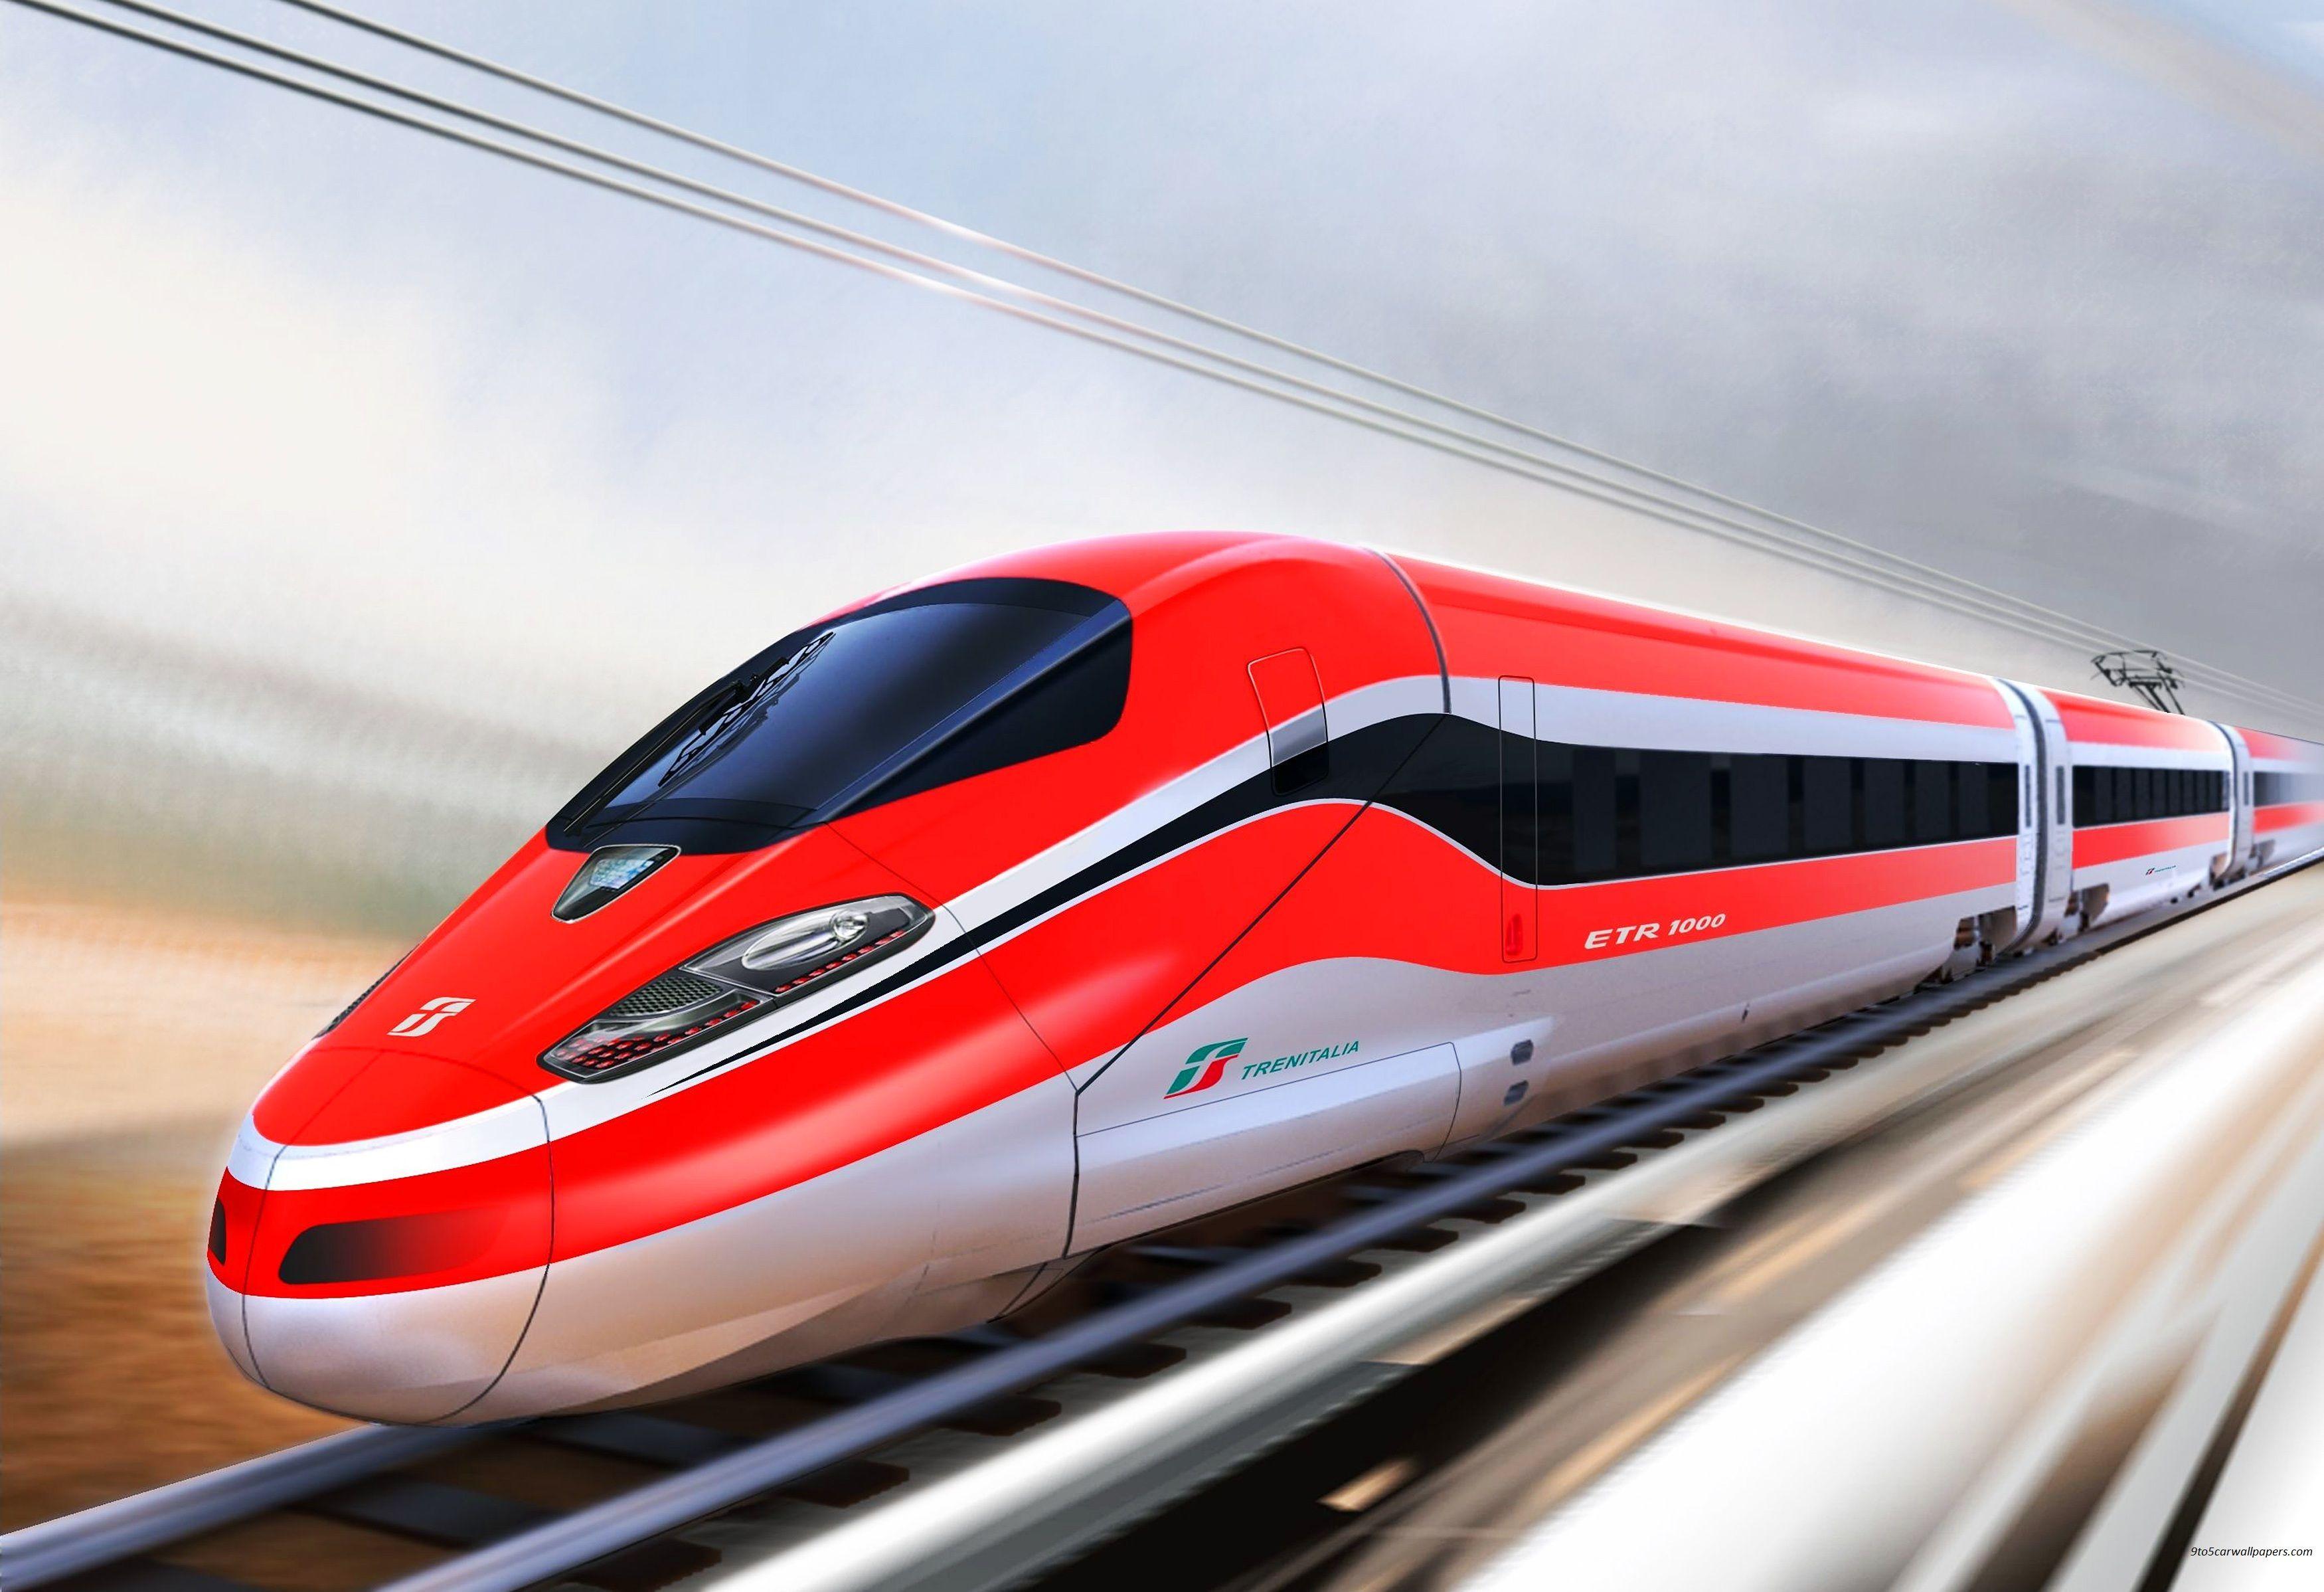 Bullet Red Train Wallpaper HD. Passageiros, Trens, Vídeo de trem